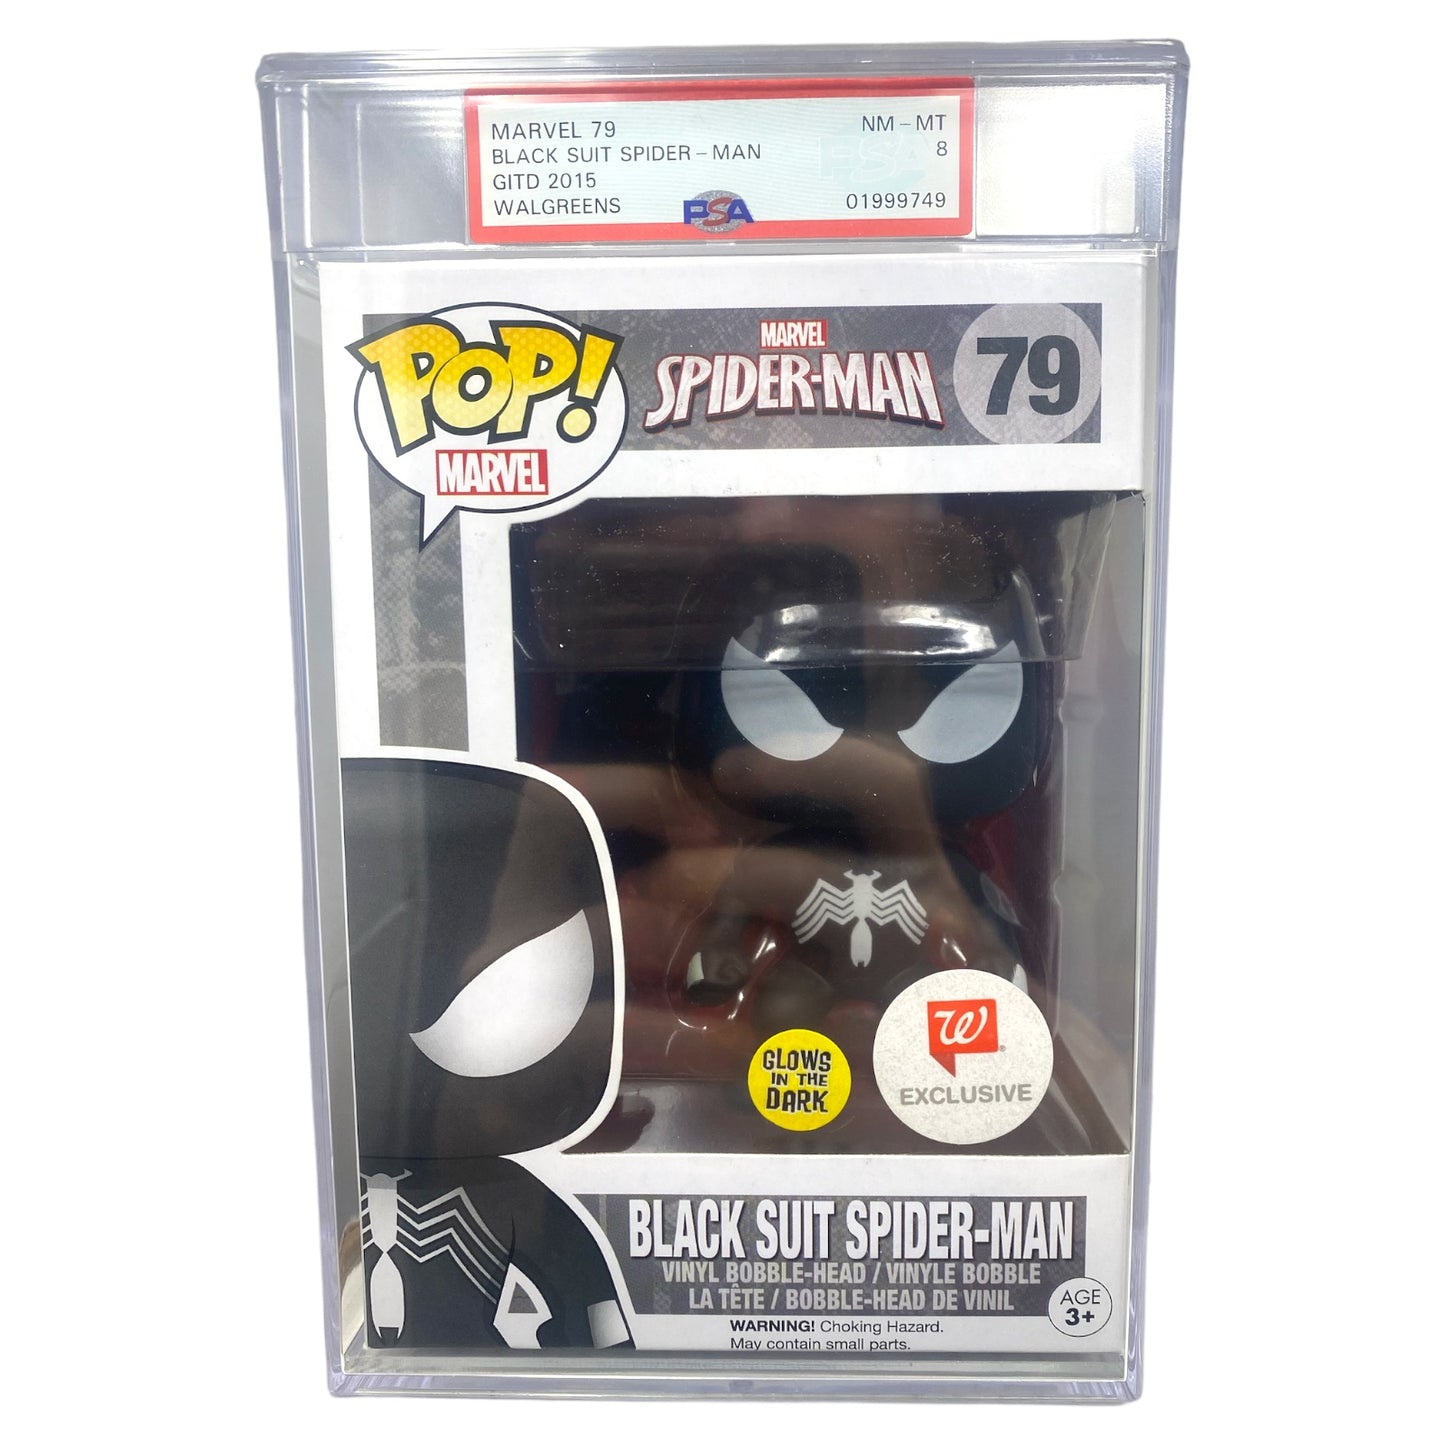 PSA Grade 8 2015 Black Suit Spider-Man 79 Glows in the Dark, Walgreens